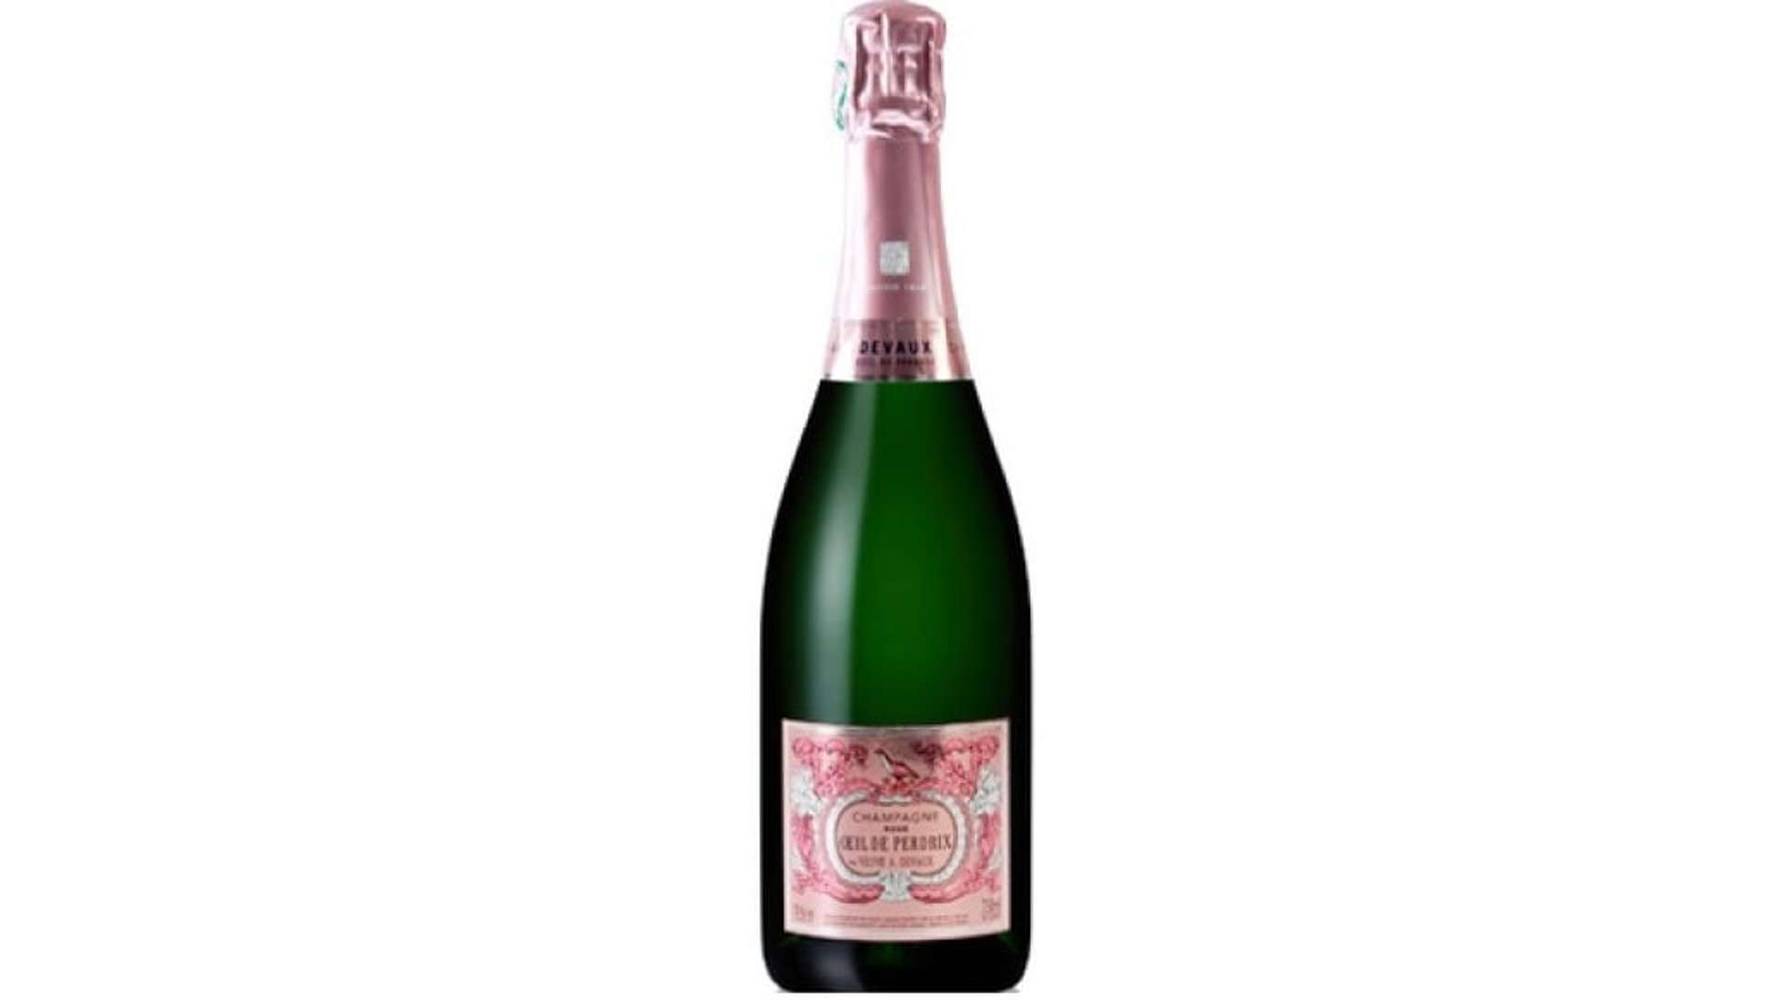 Champagne Devaux - Vin rosé brut oeil de perdrix AOP (750 ml)